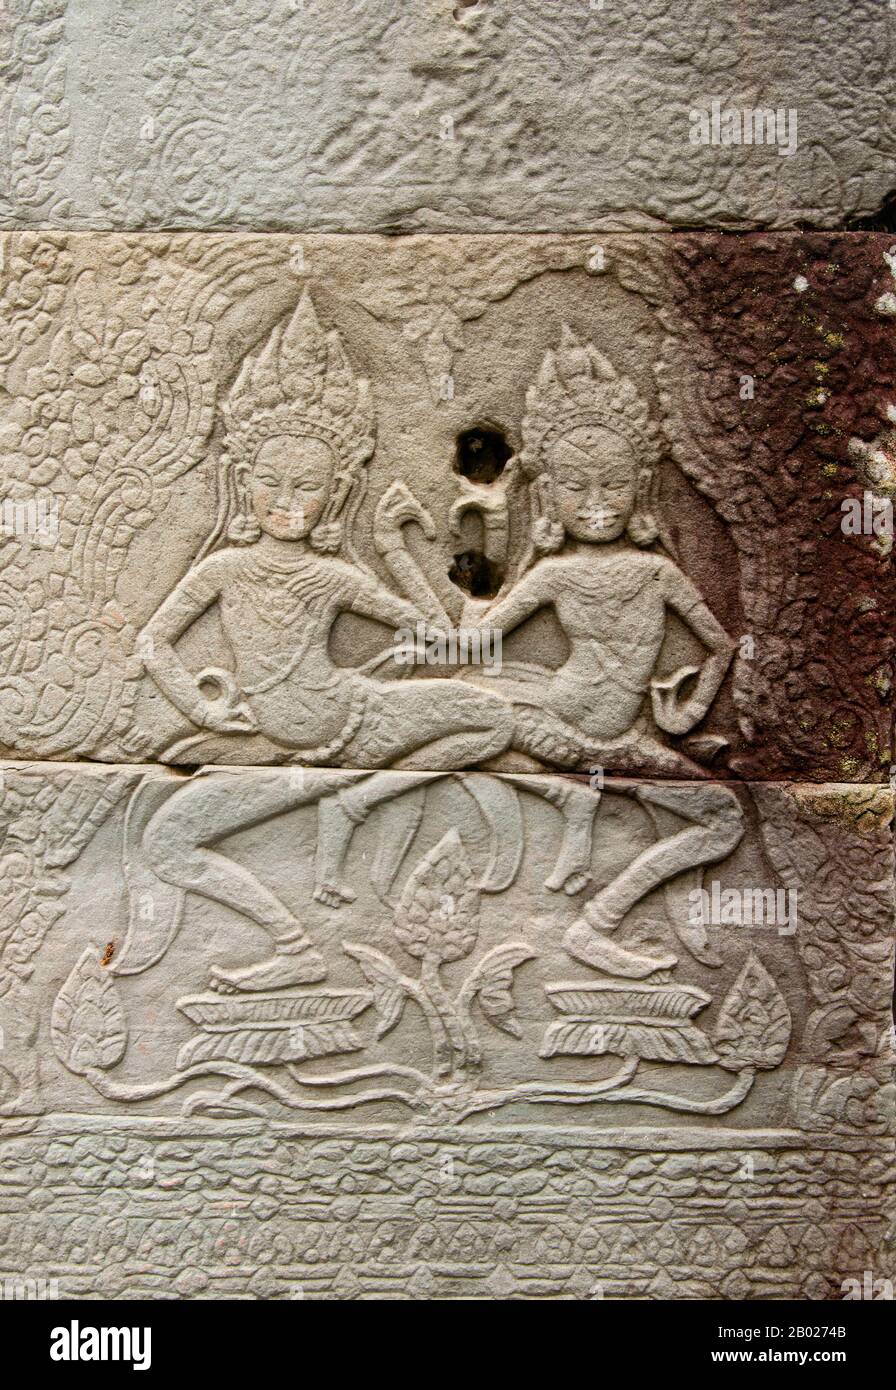 Cambogia: apsaras danzante (Ninfe celesti) su una colonna a Banteay Kdei, Angkor. Banteay Kdei si trova a sud-est di Ta Prohm e ad est di Angkor Thom. Fu costruito tra la fine degli anni '12th e i primi anni '13th durante il regno di Jayavarman VII, è un tempio buddista in stile Bayon, simile in pianta a Ta Prohm e Preah Khan, ma meno complesso e più piccolo. Foto Stock